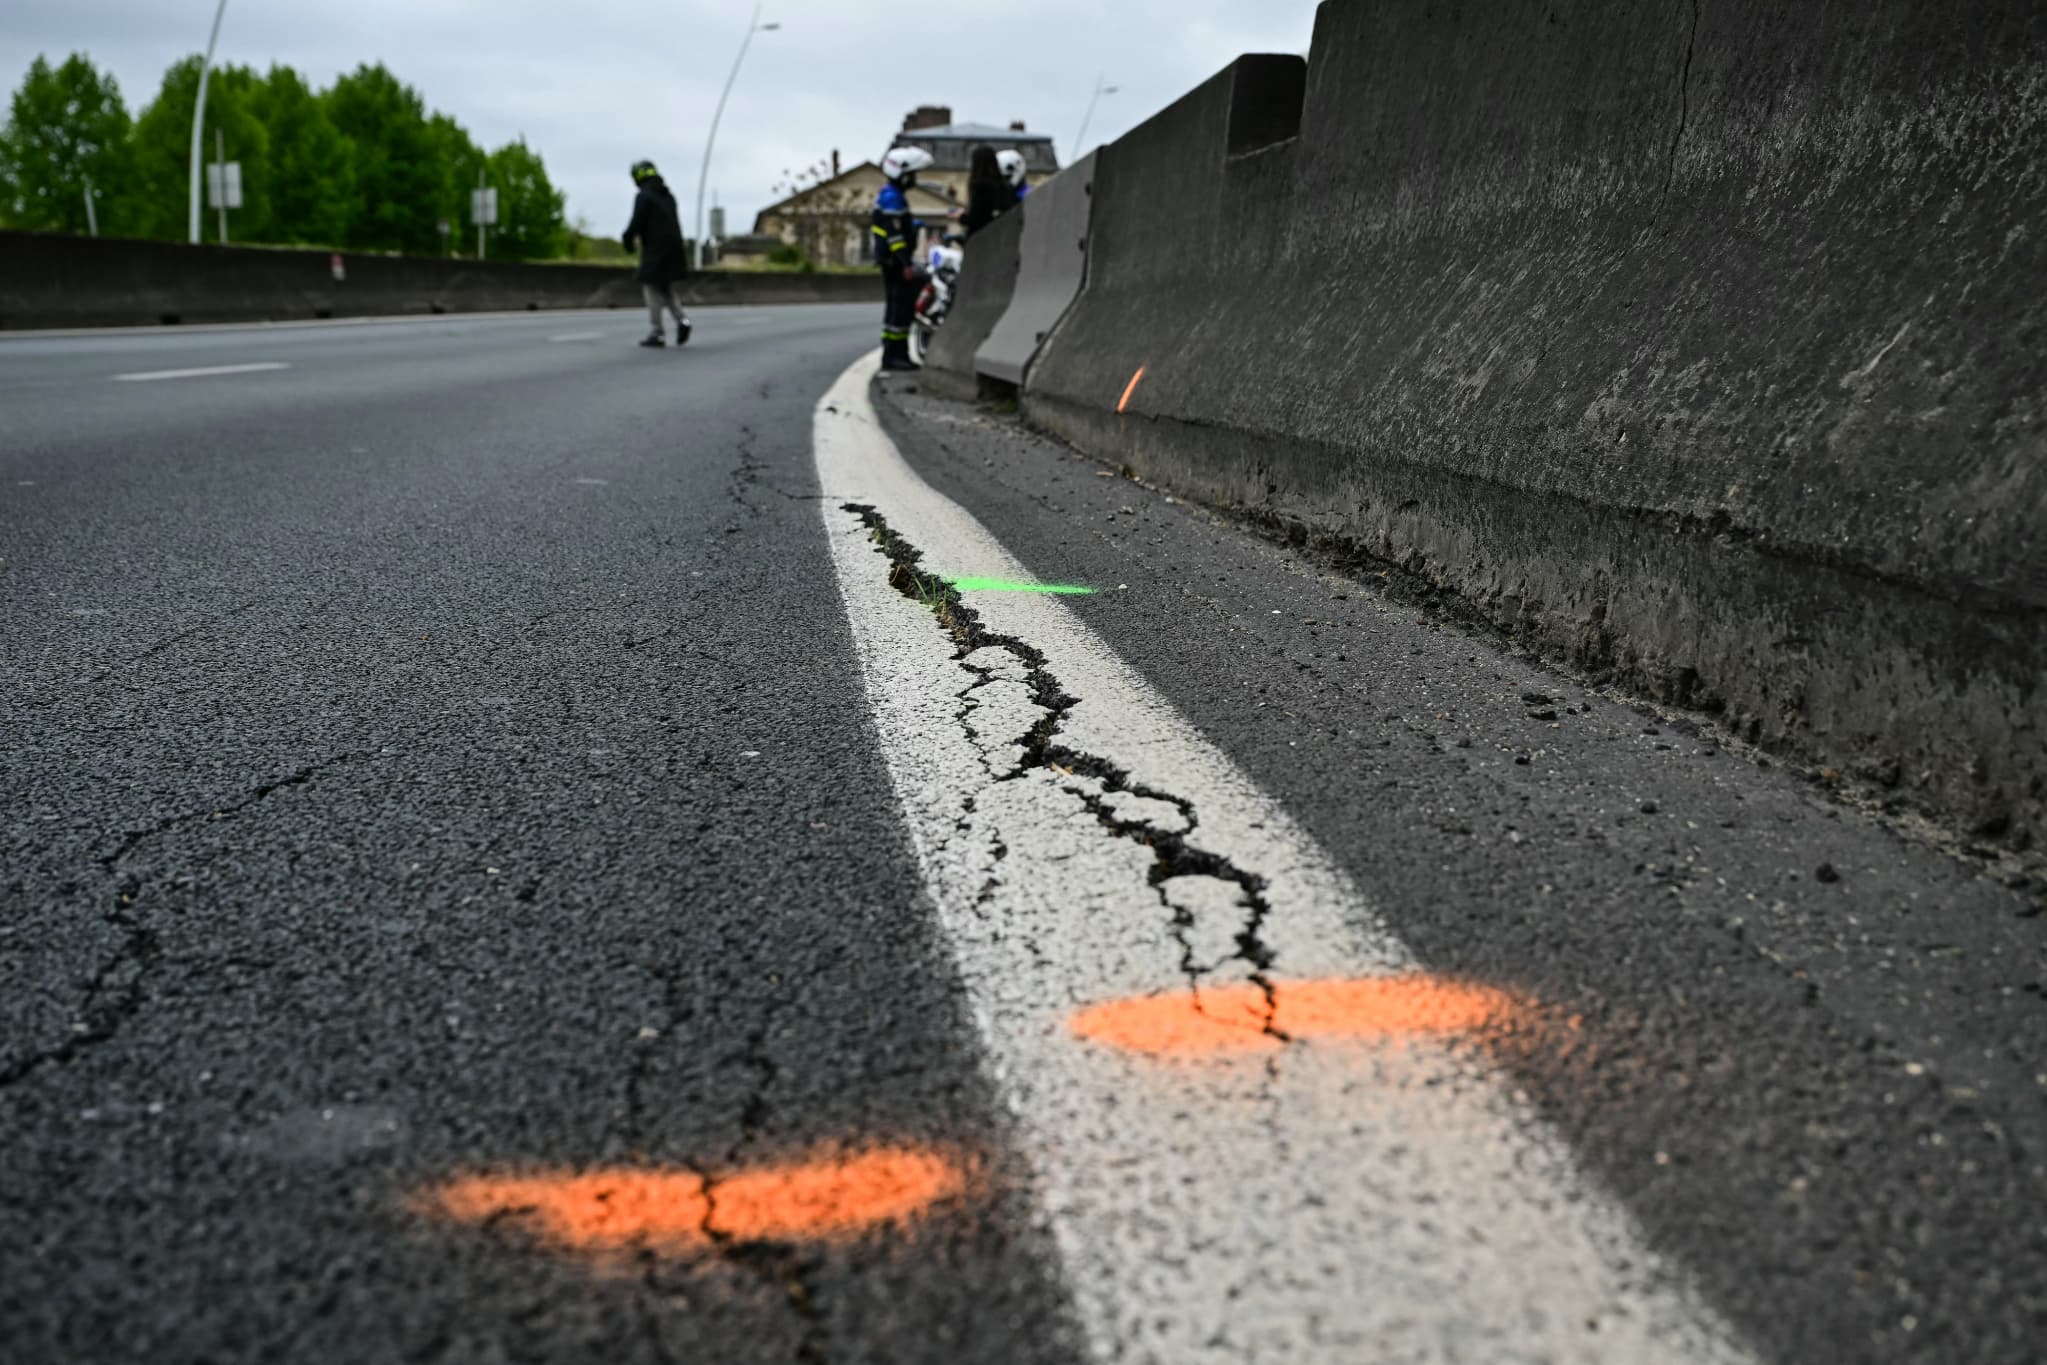 réouverture partielle de l'autoroute a13 dans le sens province-paris prévue ce vendredi 10 mai